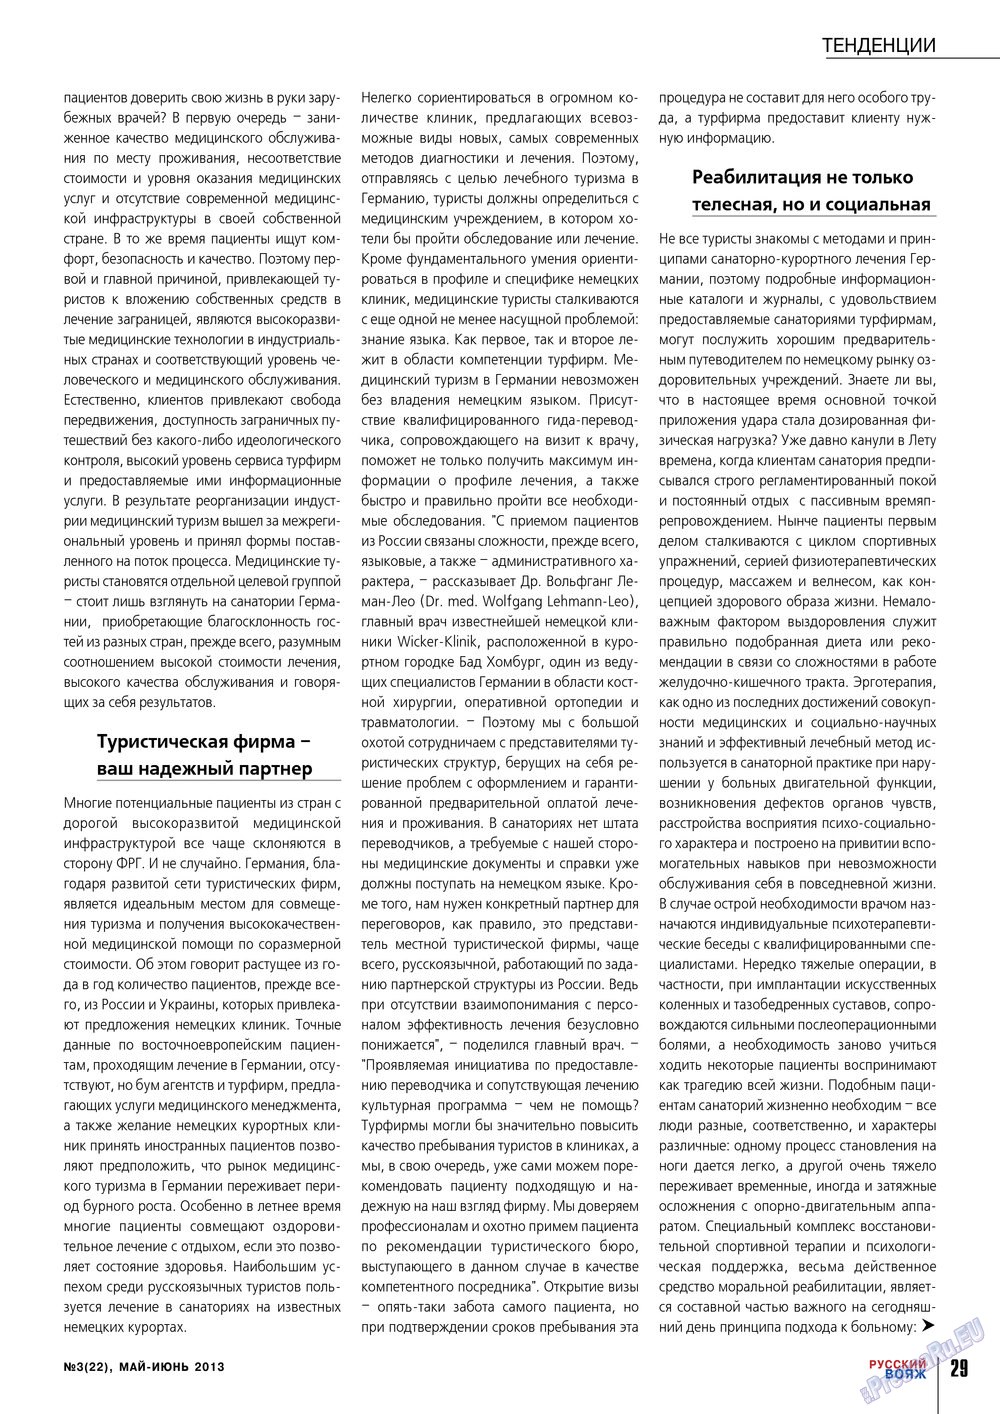 Русский вояж (журнал). 2013 год, номер 22, стр. 29